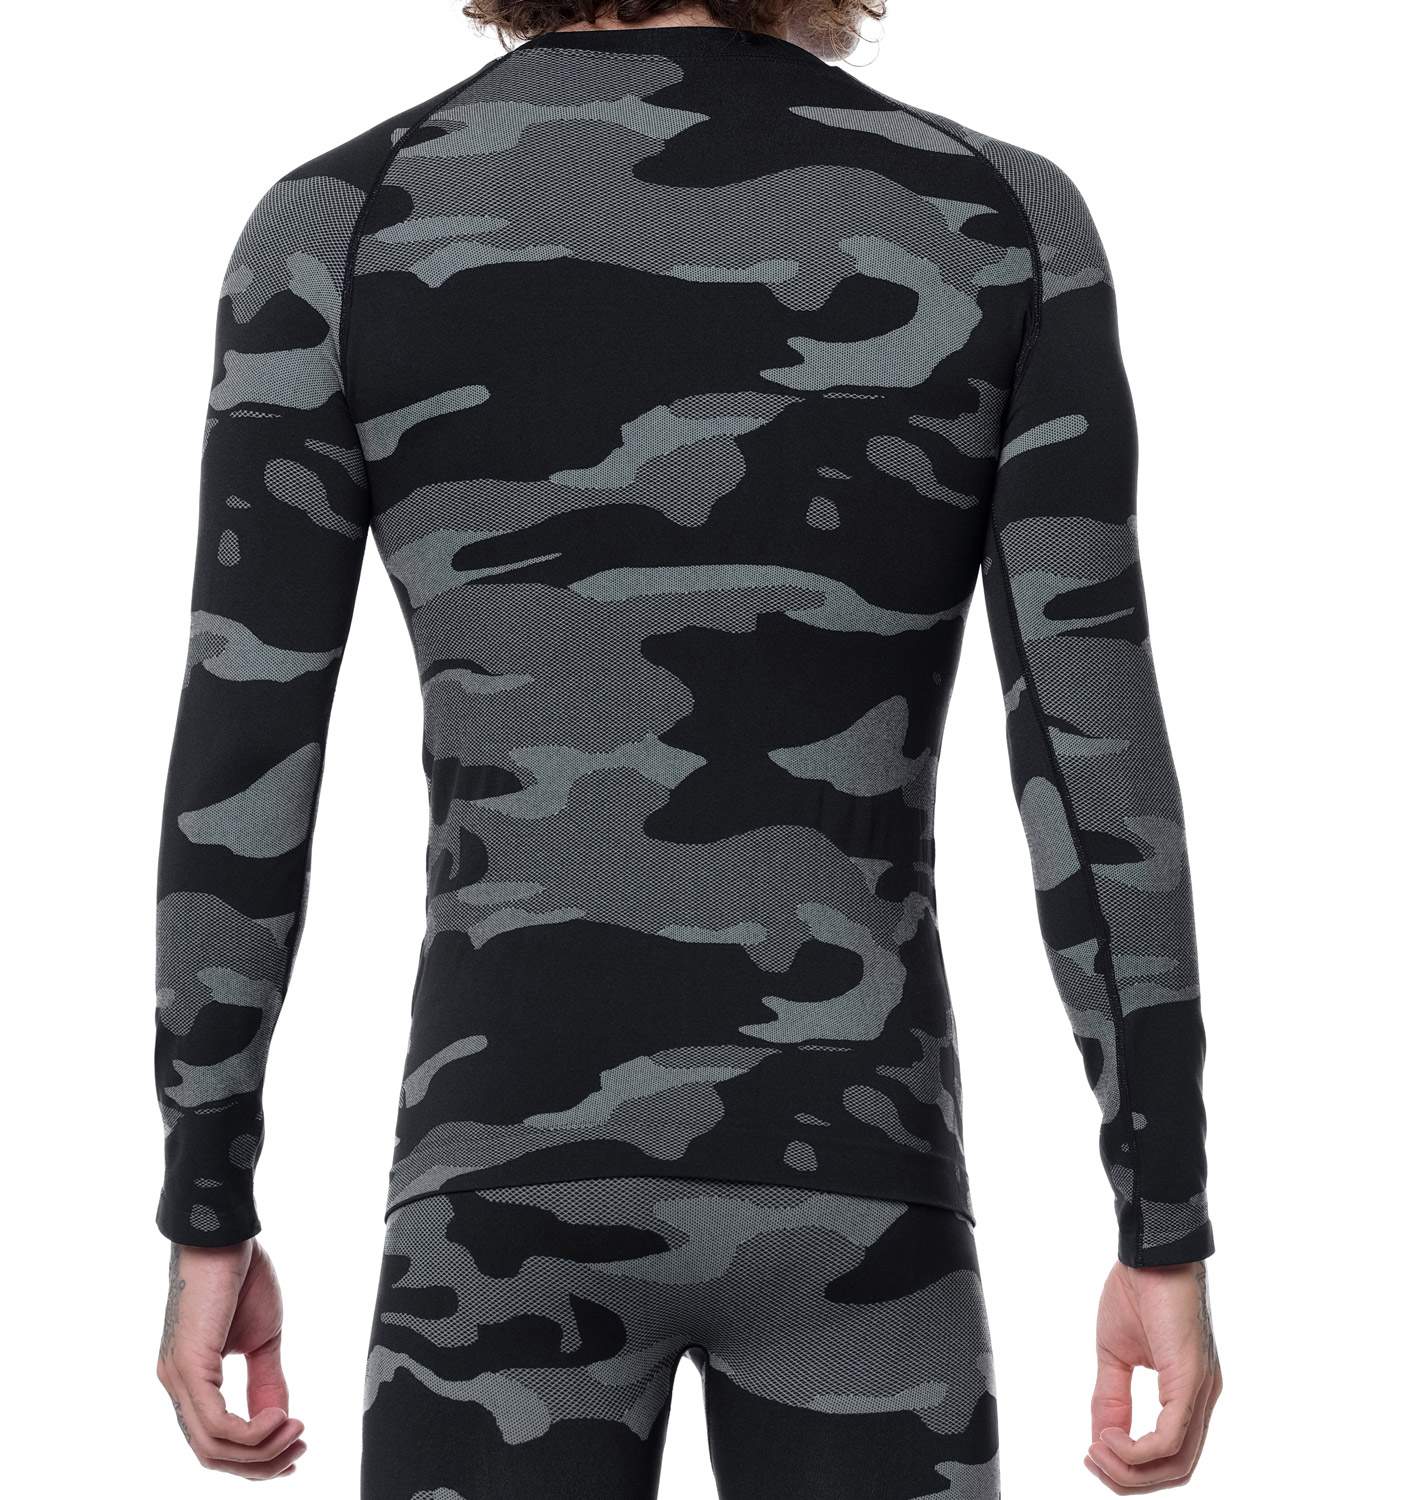 Funktionsshirt Camouflage grau stark soul 1025 CZY0838 frei Kopie